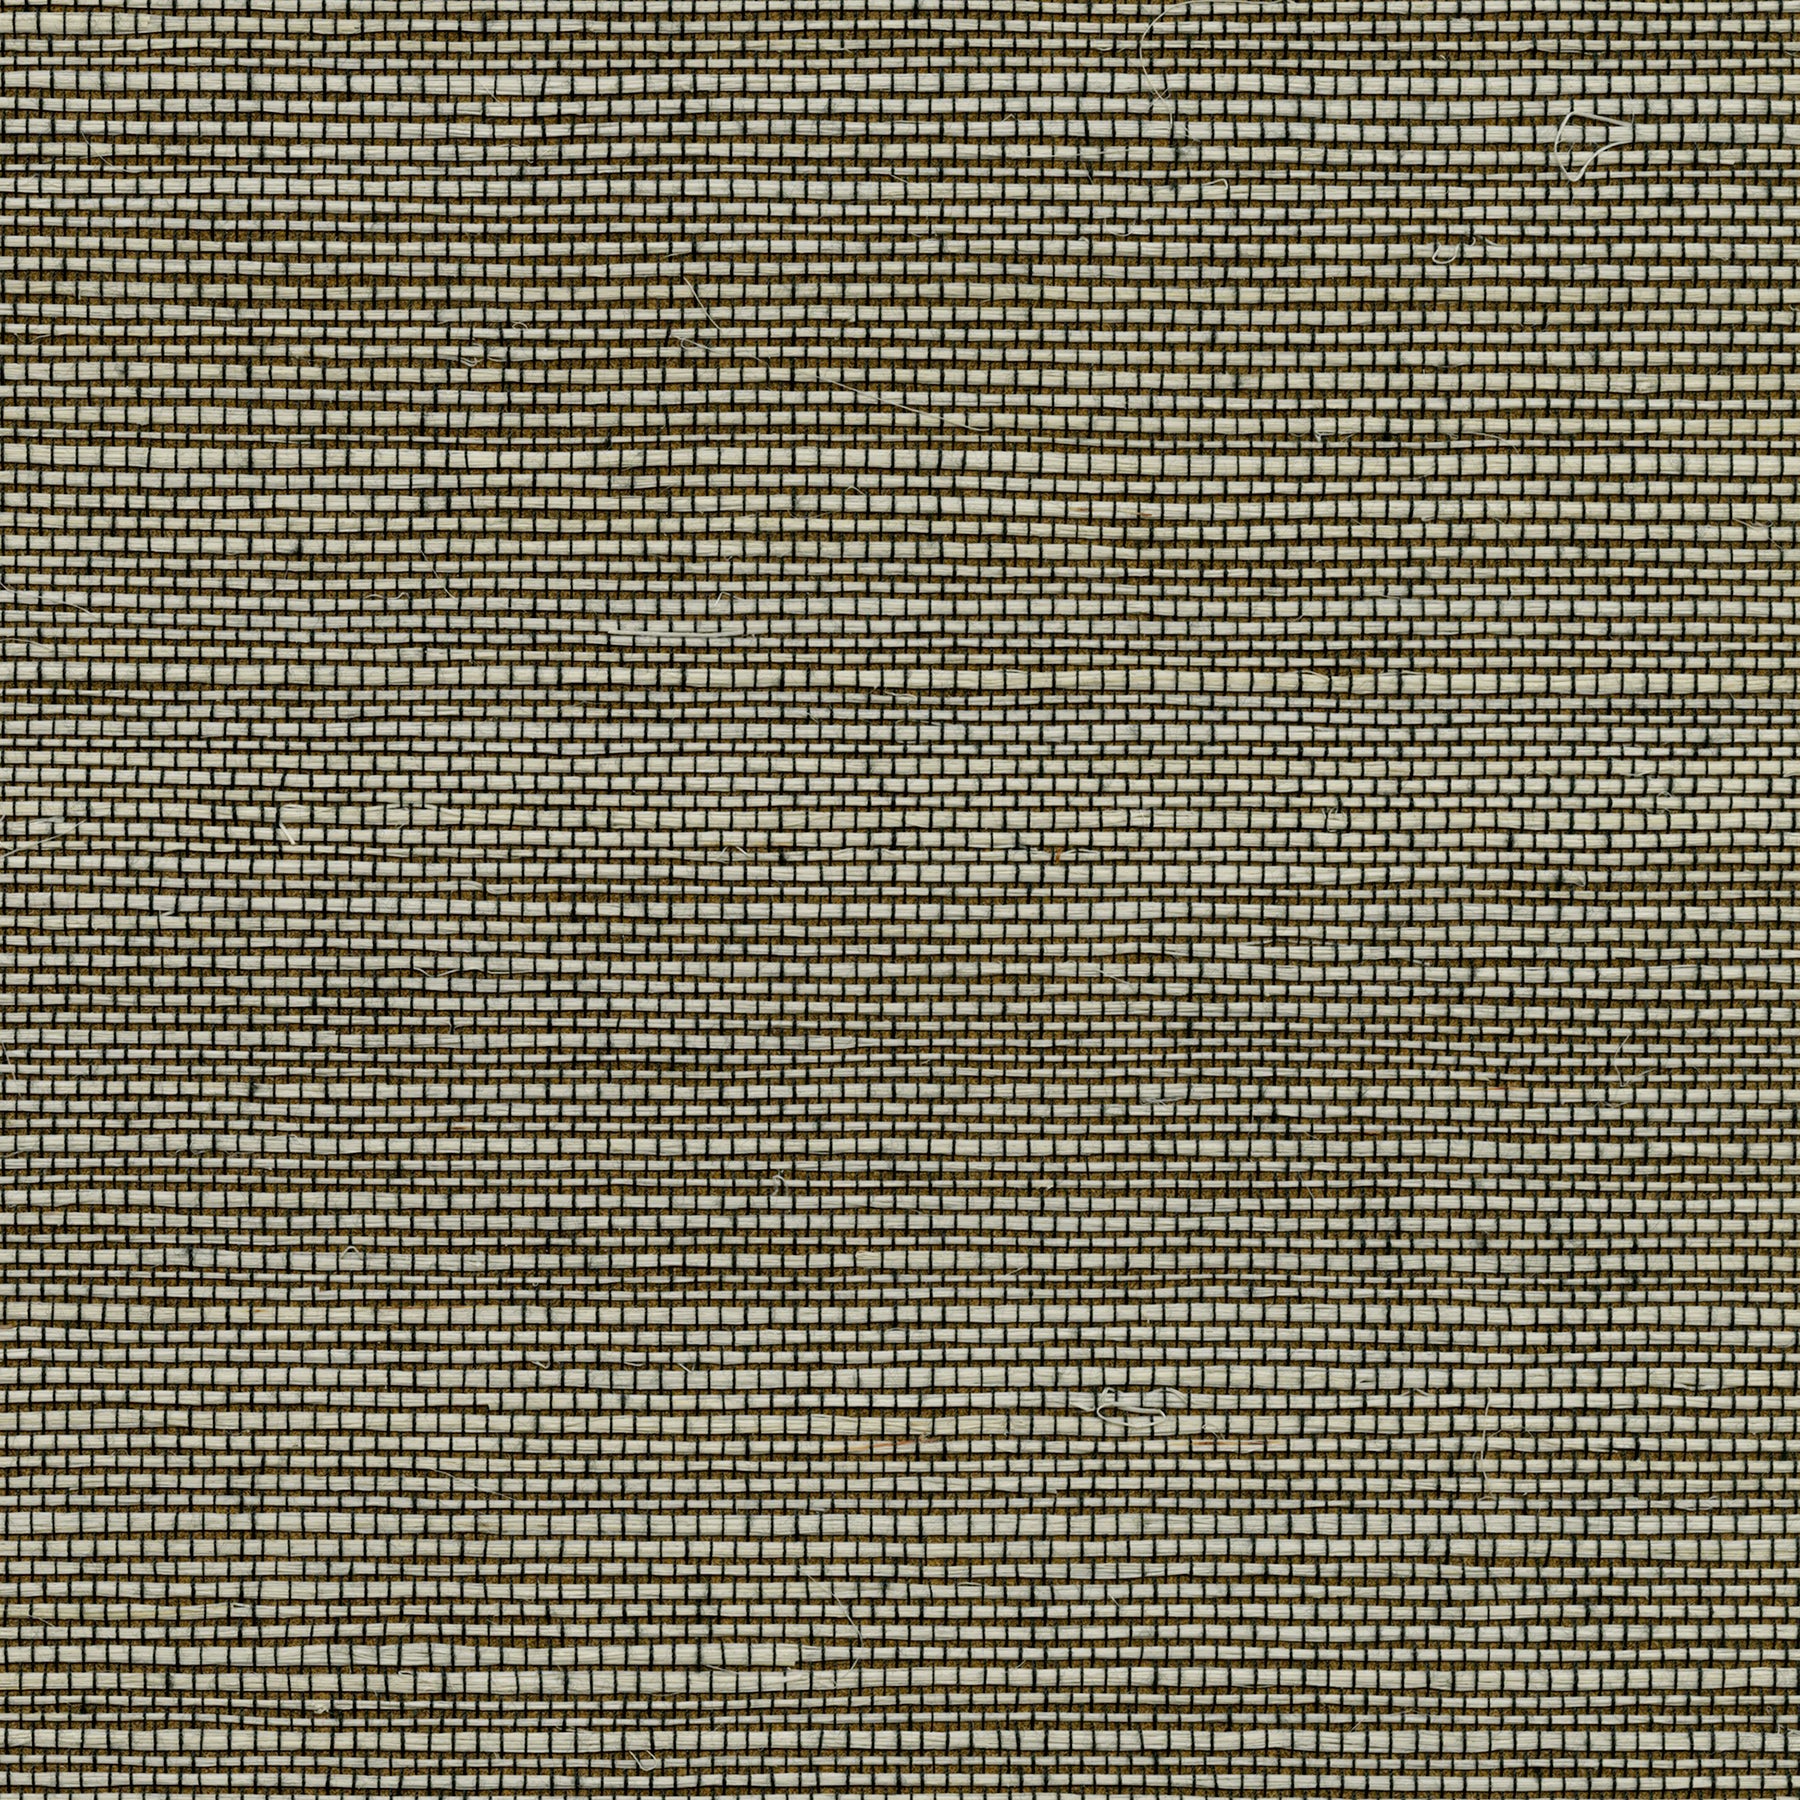 Find 4018-0034 Grasscloth Portfolio Jiao Brown Grasscloth Brown by Advantage